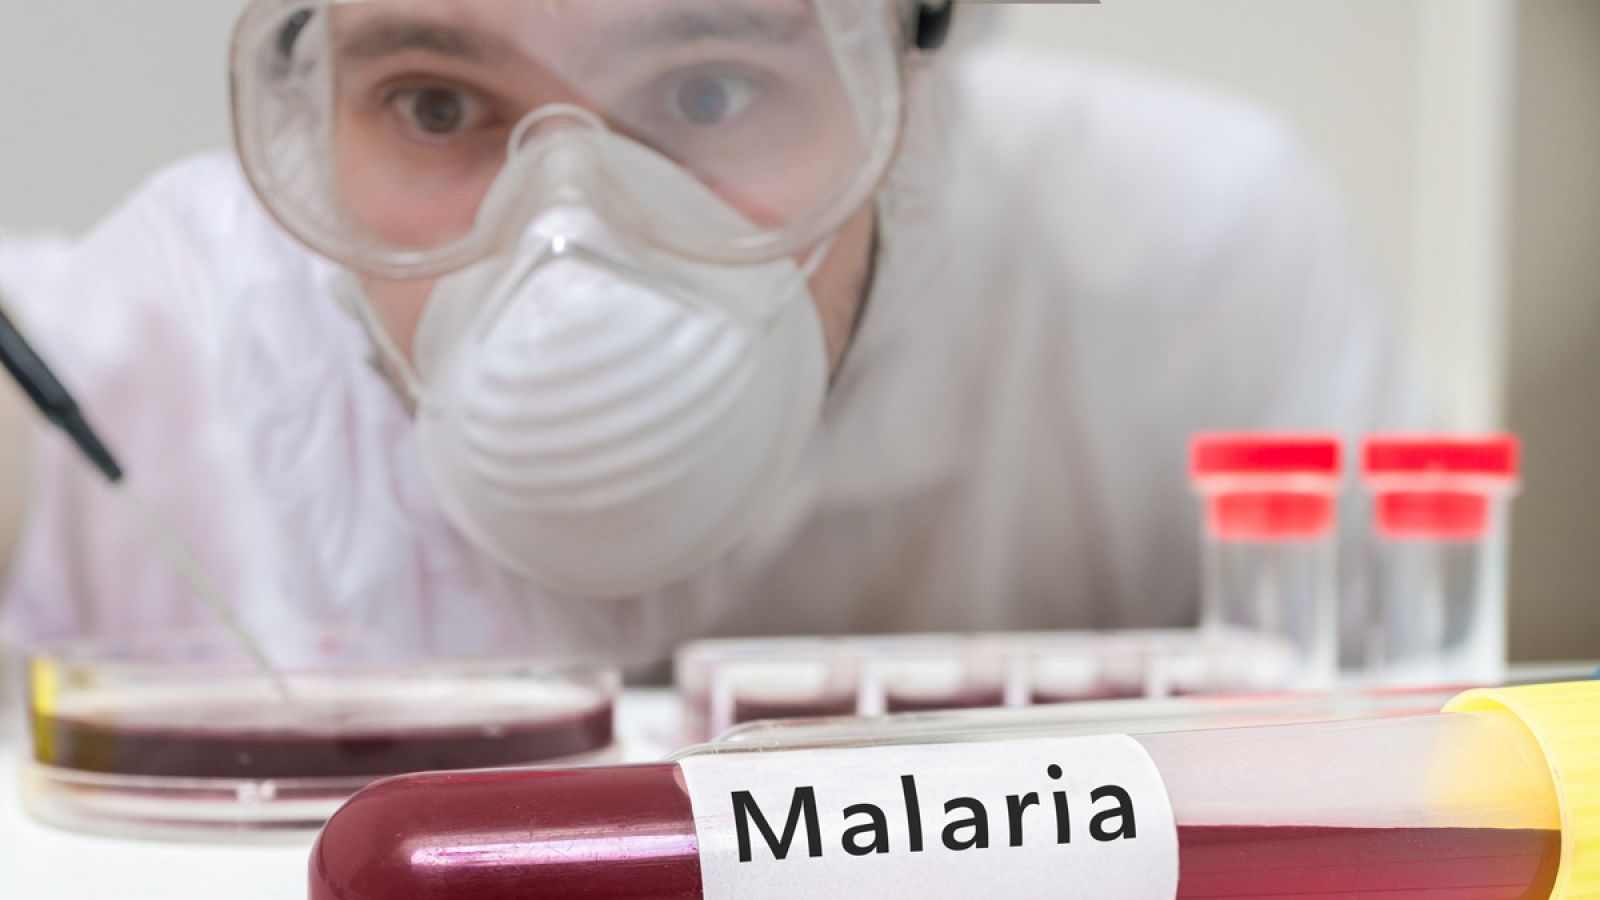 La malaria originó en 2015 más de 200 millones de infecciones y medio millón de muertos.